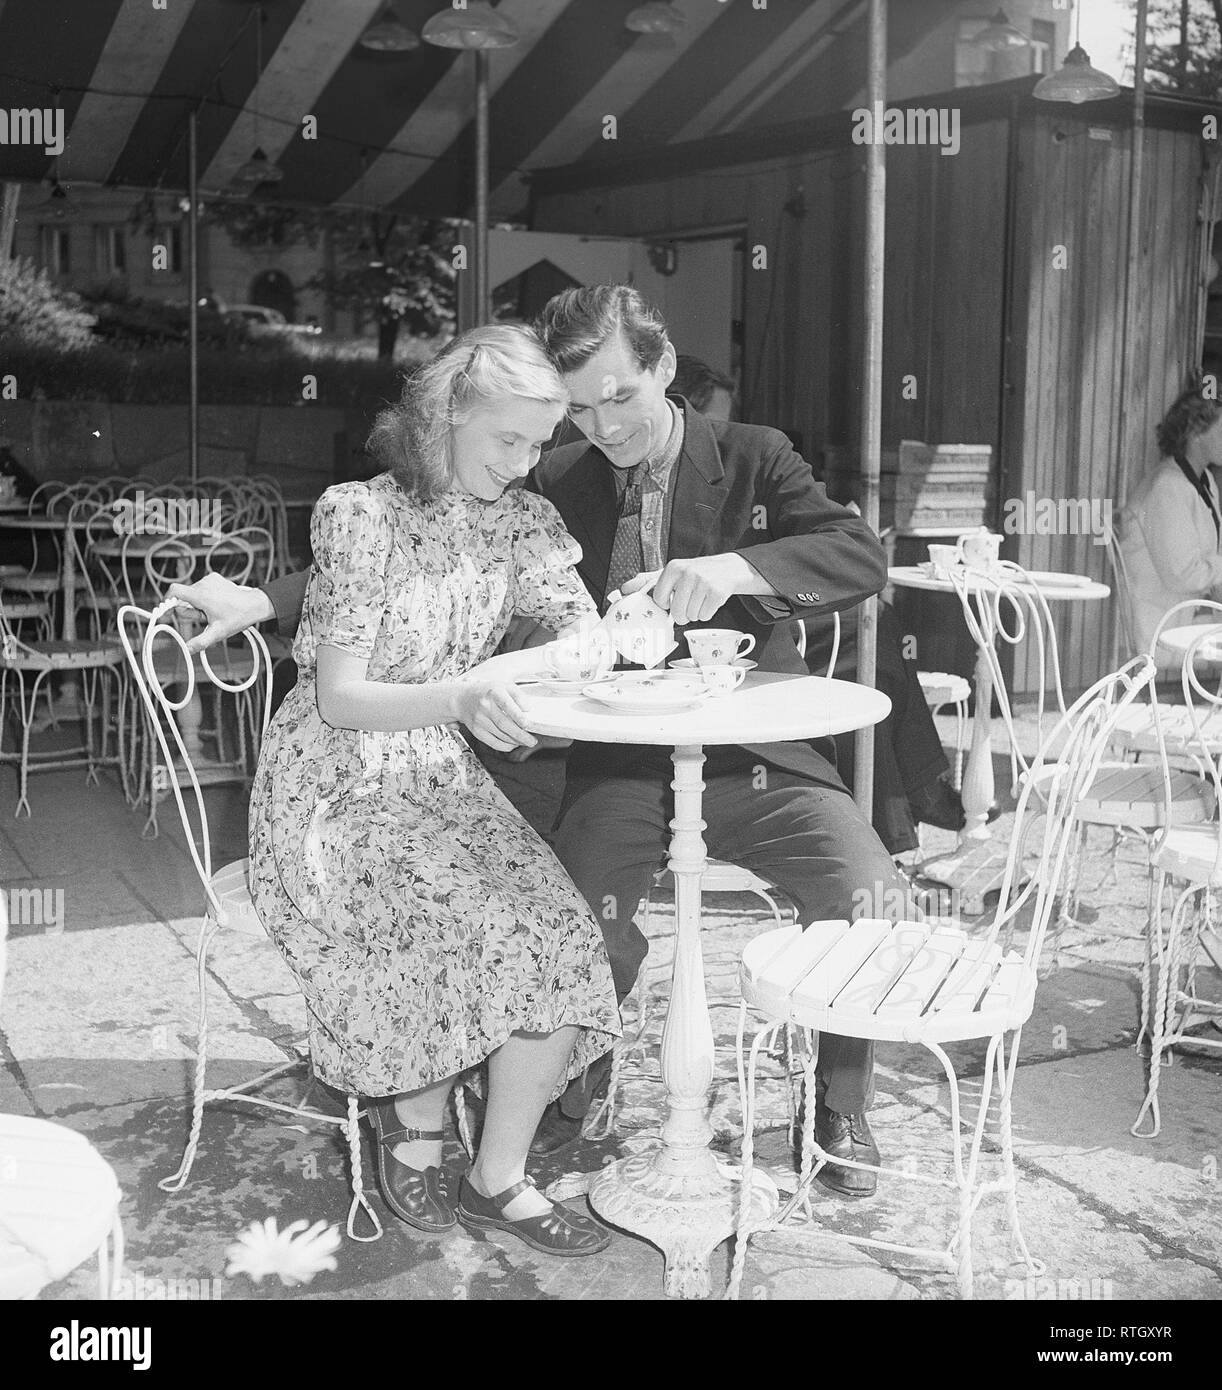 1940s stile di vita una tipica fika. Una giovane coppia in una caffetteria all'aperto. Versa il suo caffè. Sono attori Birger Malmsten, 1920-1991 e Doris Svedlund, 1926-1985. Svezia. Foto Kristoffersson Ref U62-6. Svezia 1946 Foto Stock